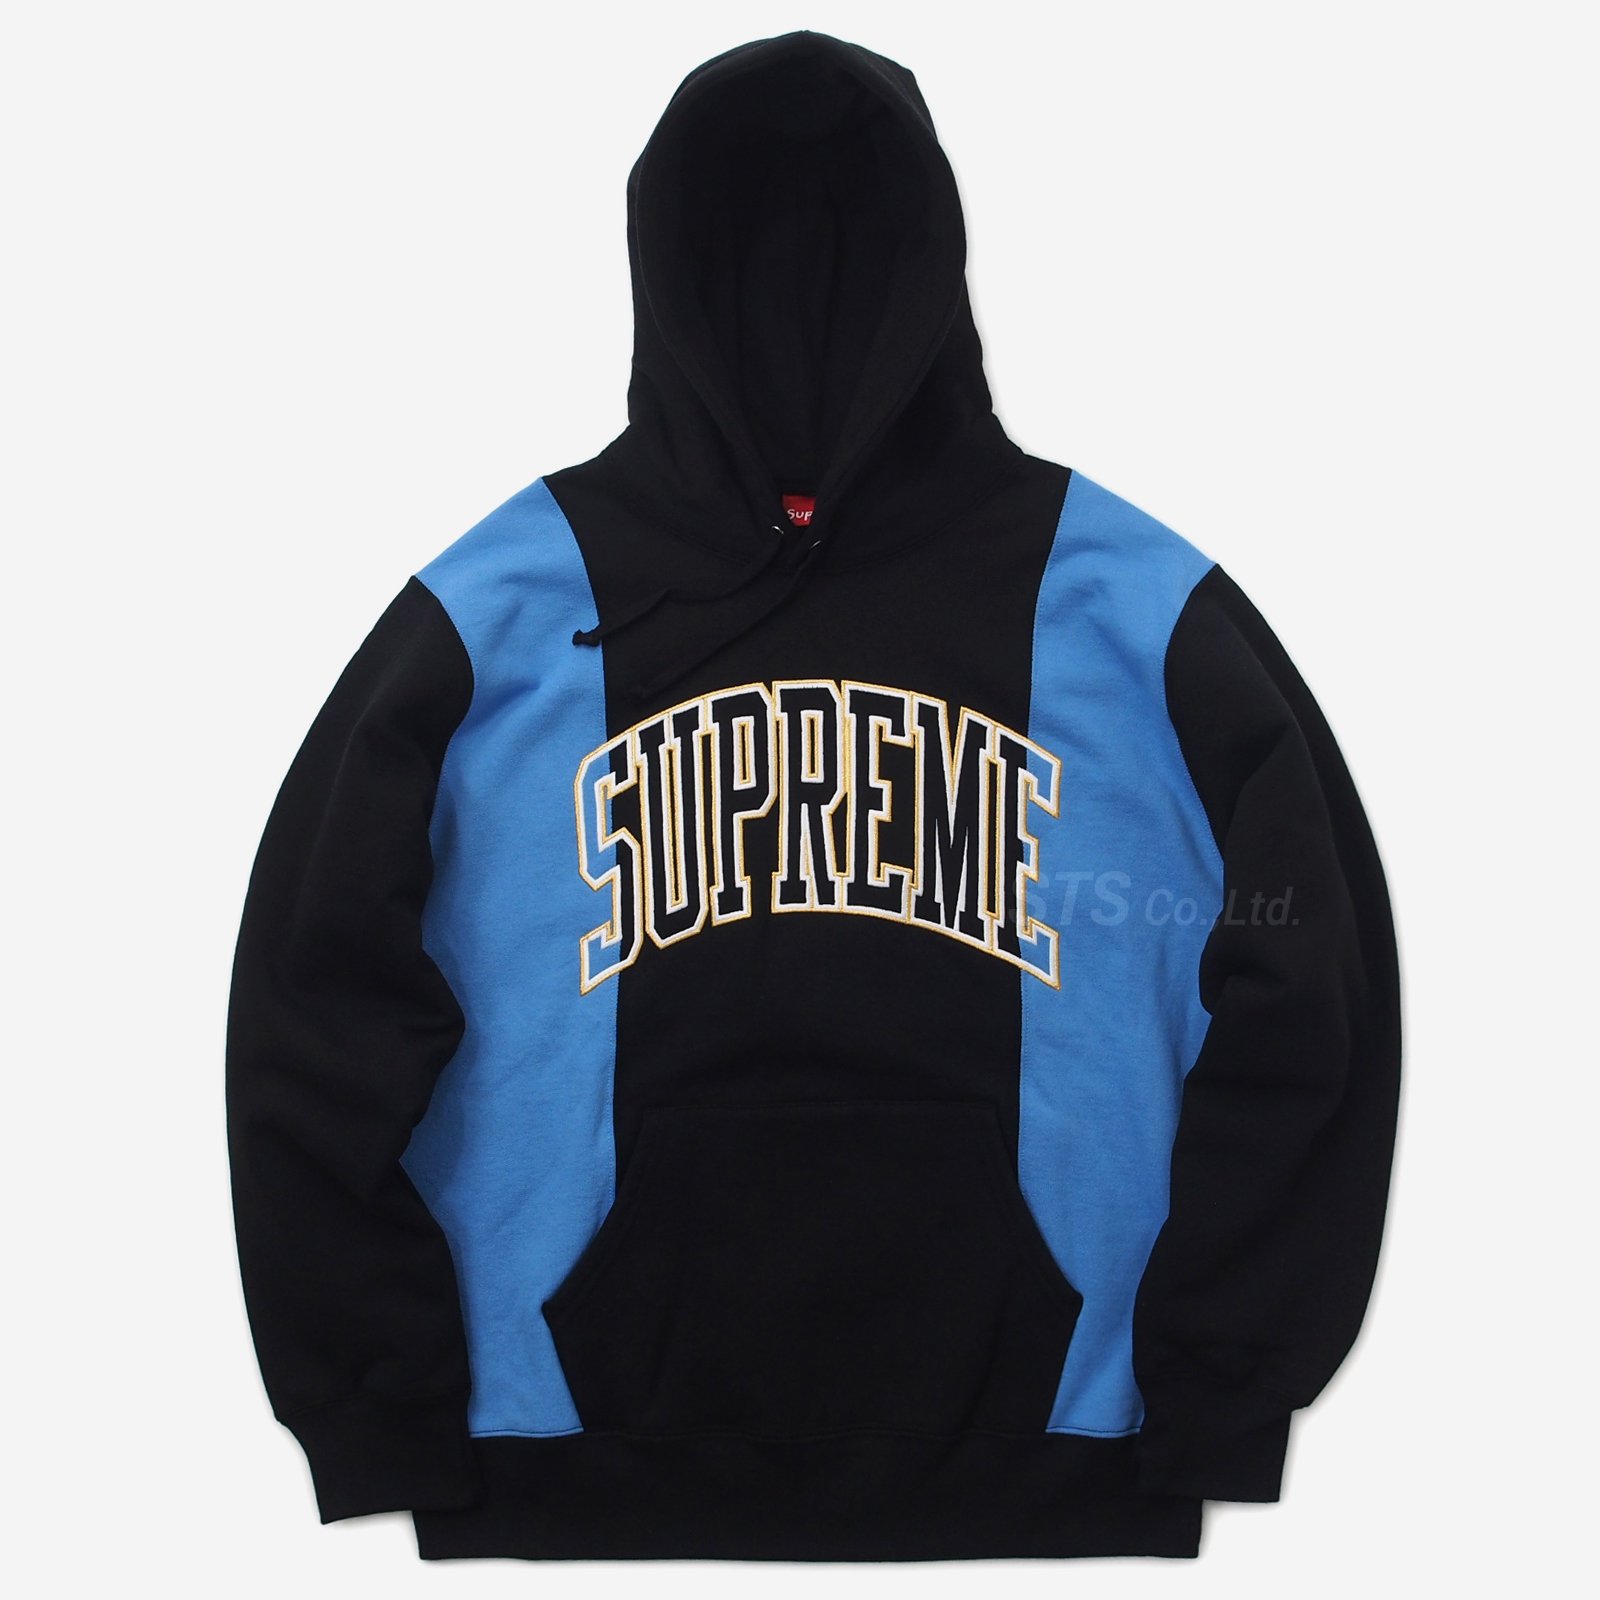 Supreme Paneled Hooded Sweatshirt